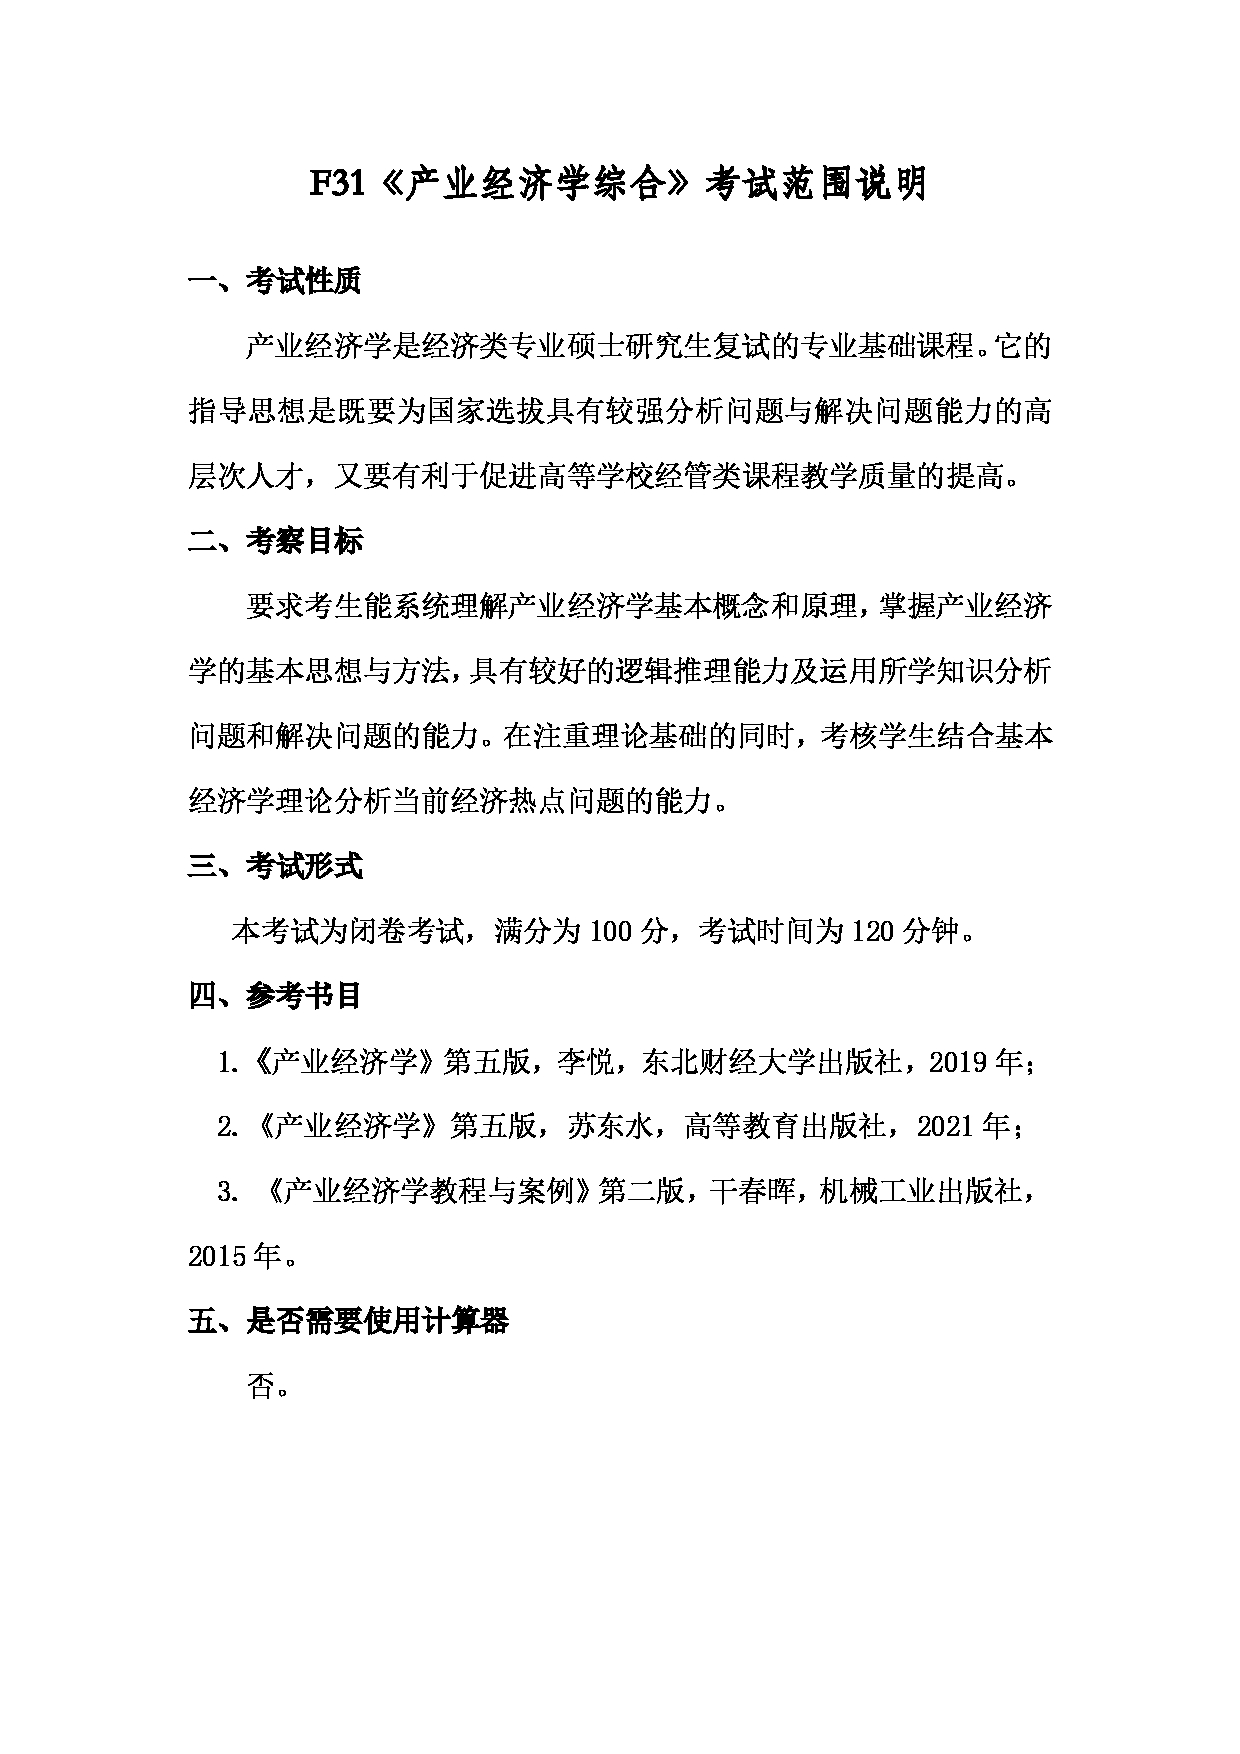 2022考研大纲：上海海洋大学2022年考研自命题科目 F31产业经济学综合 考试大纲第1页